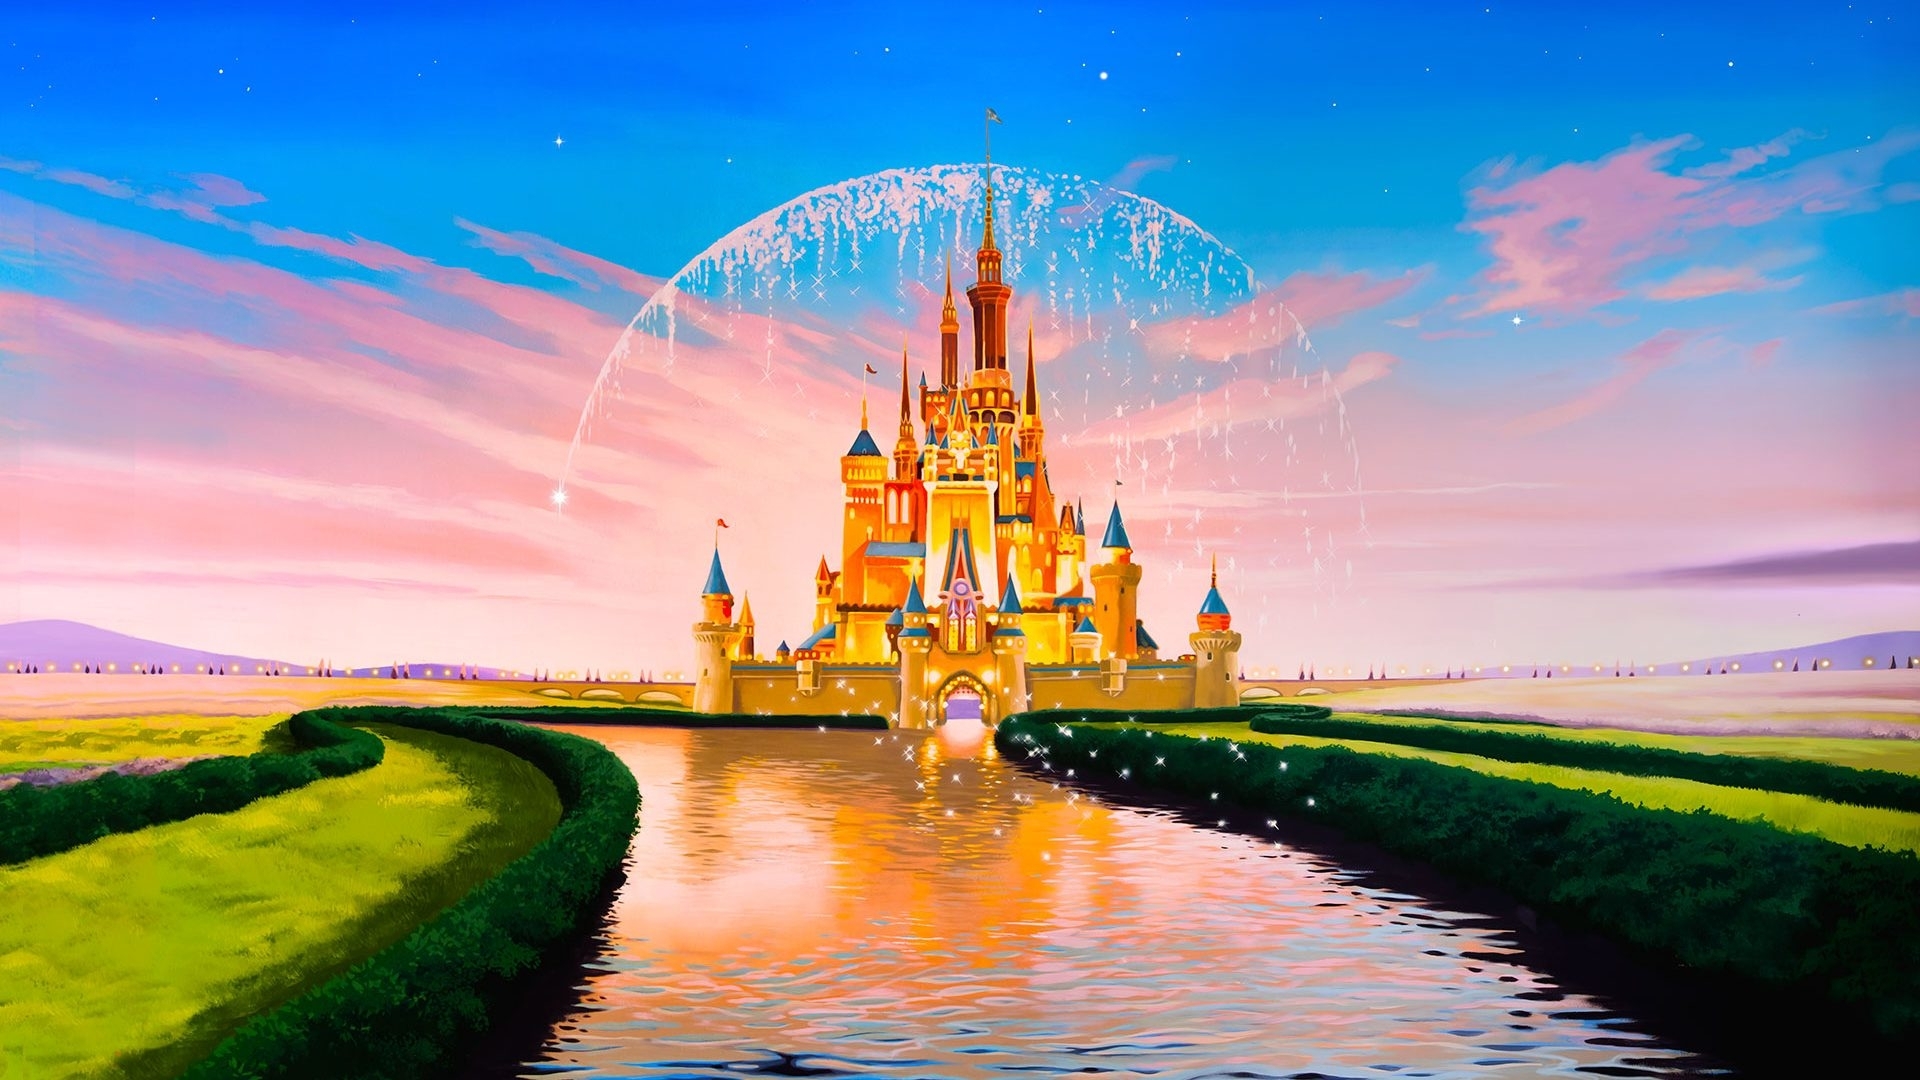 10 Latest Disney Castle Desktop Wallpaper FULL HD 1920× ...